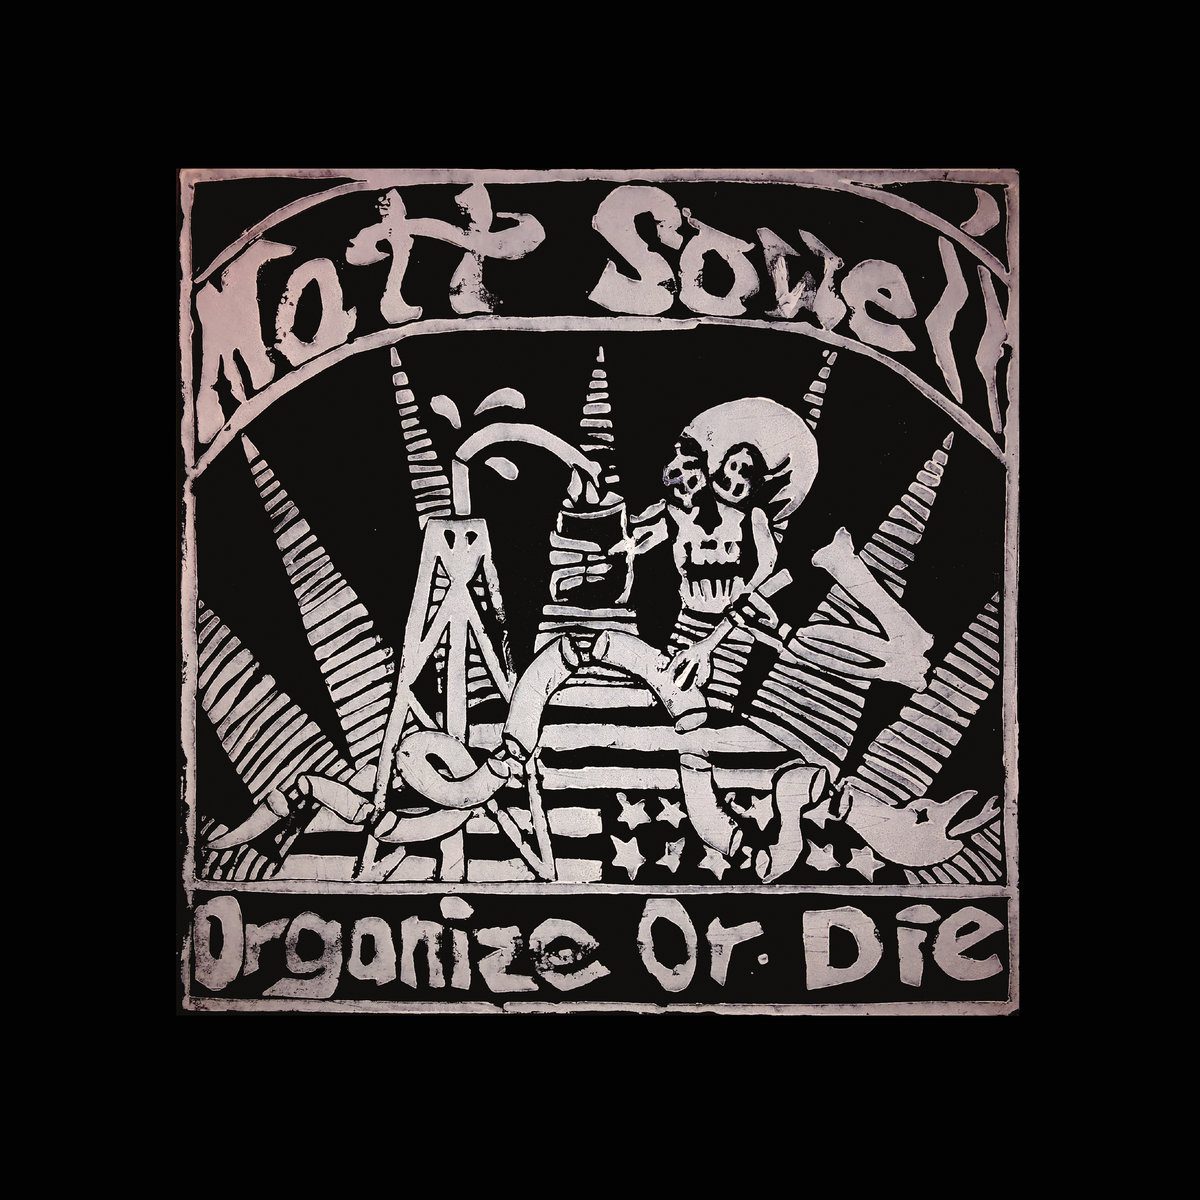 Matt Sowell – Organize or Die